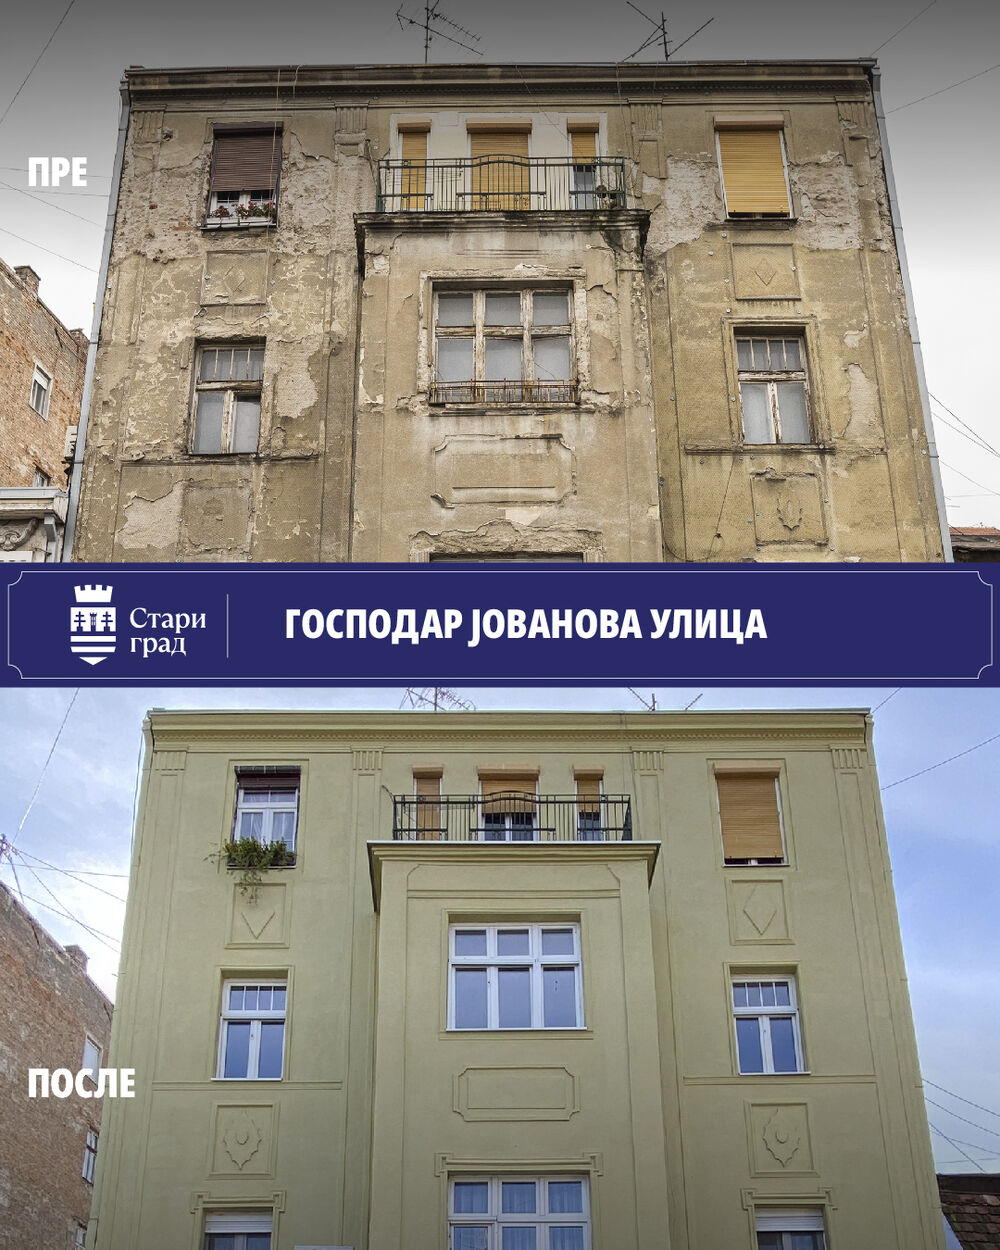 Gospodar Jovanova pre i posle rekonstrukcije fasade